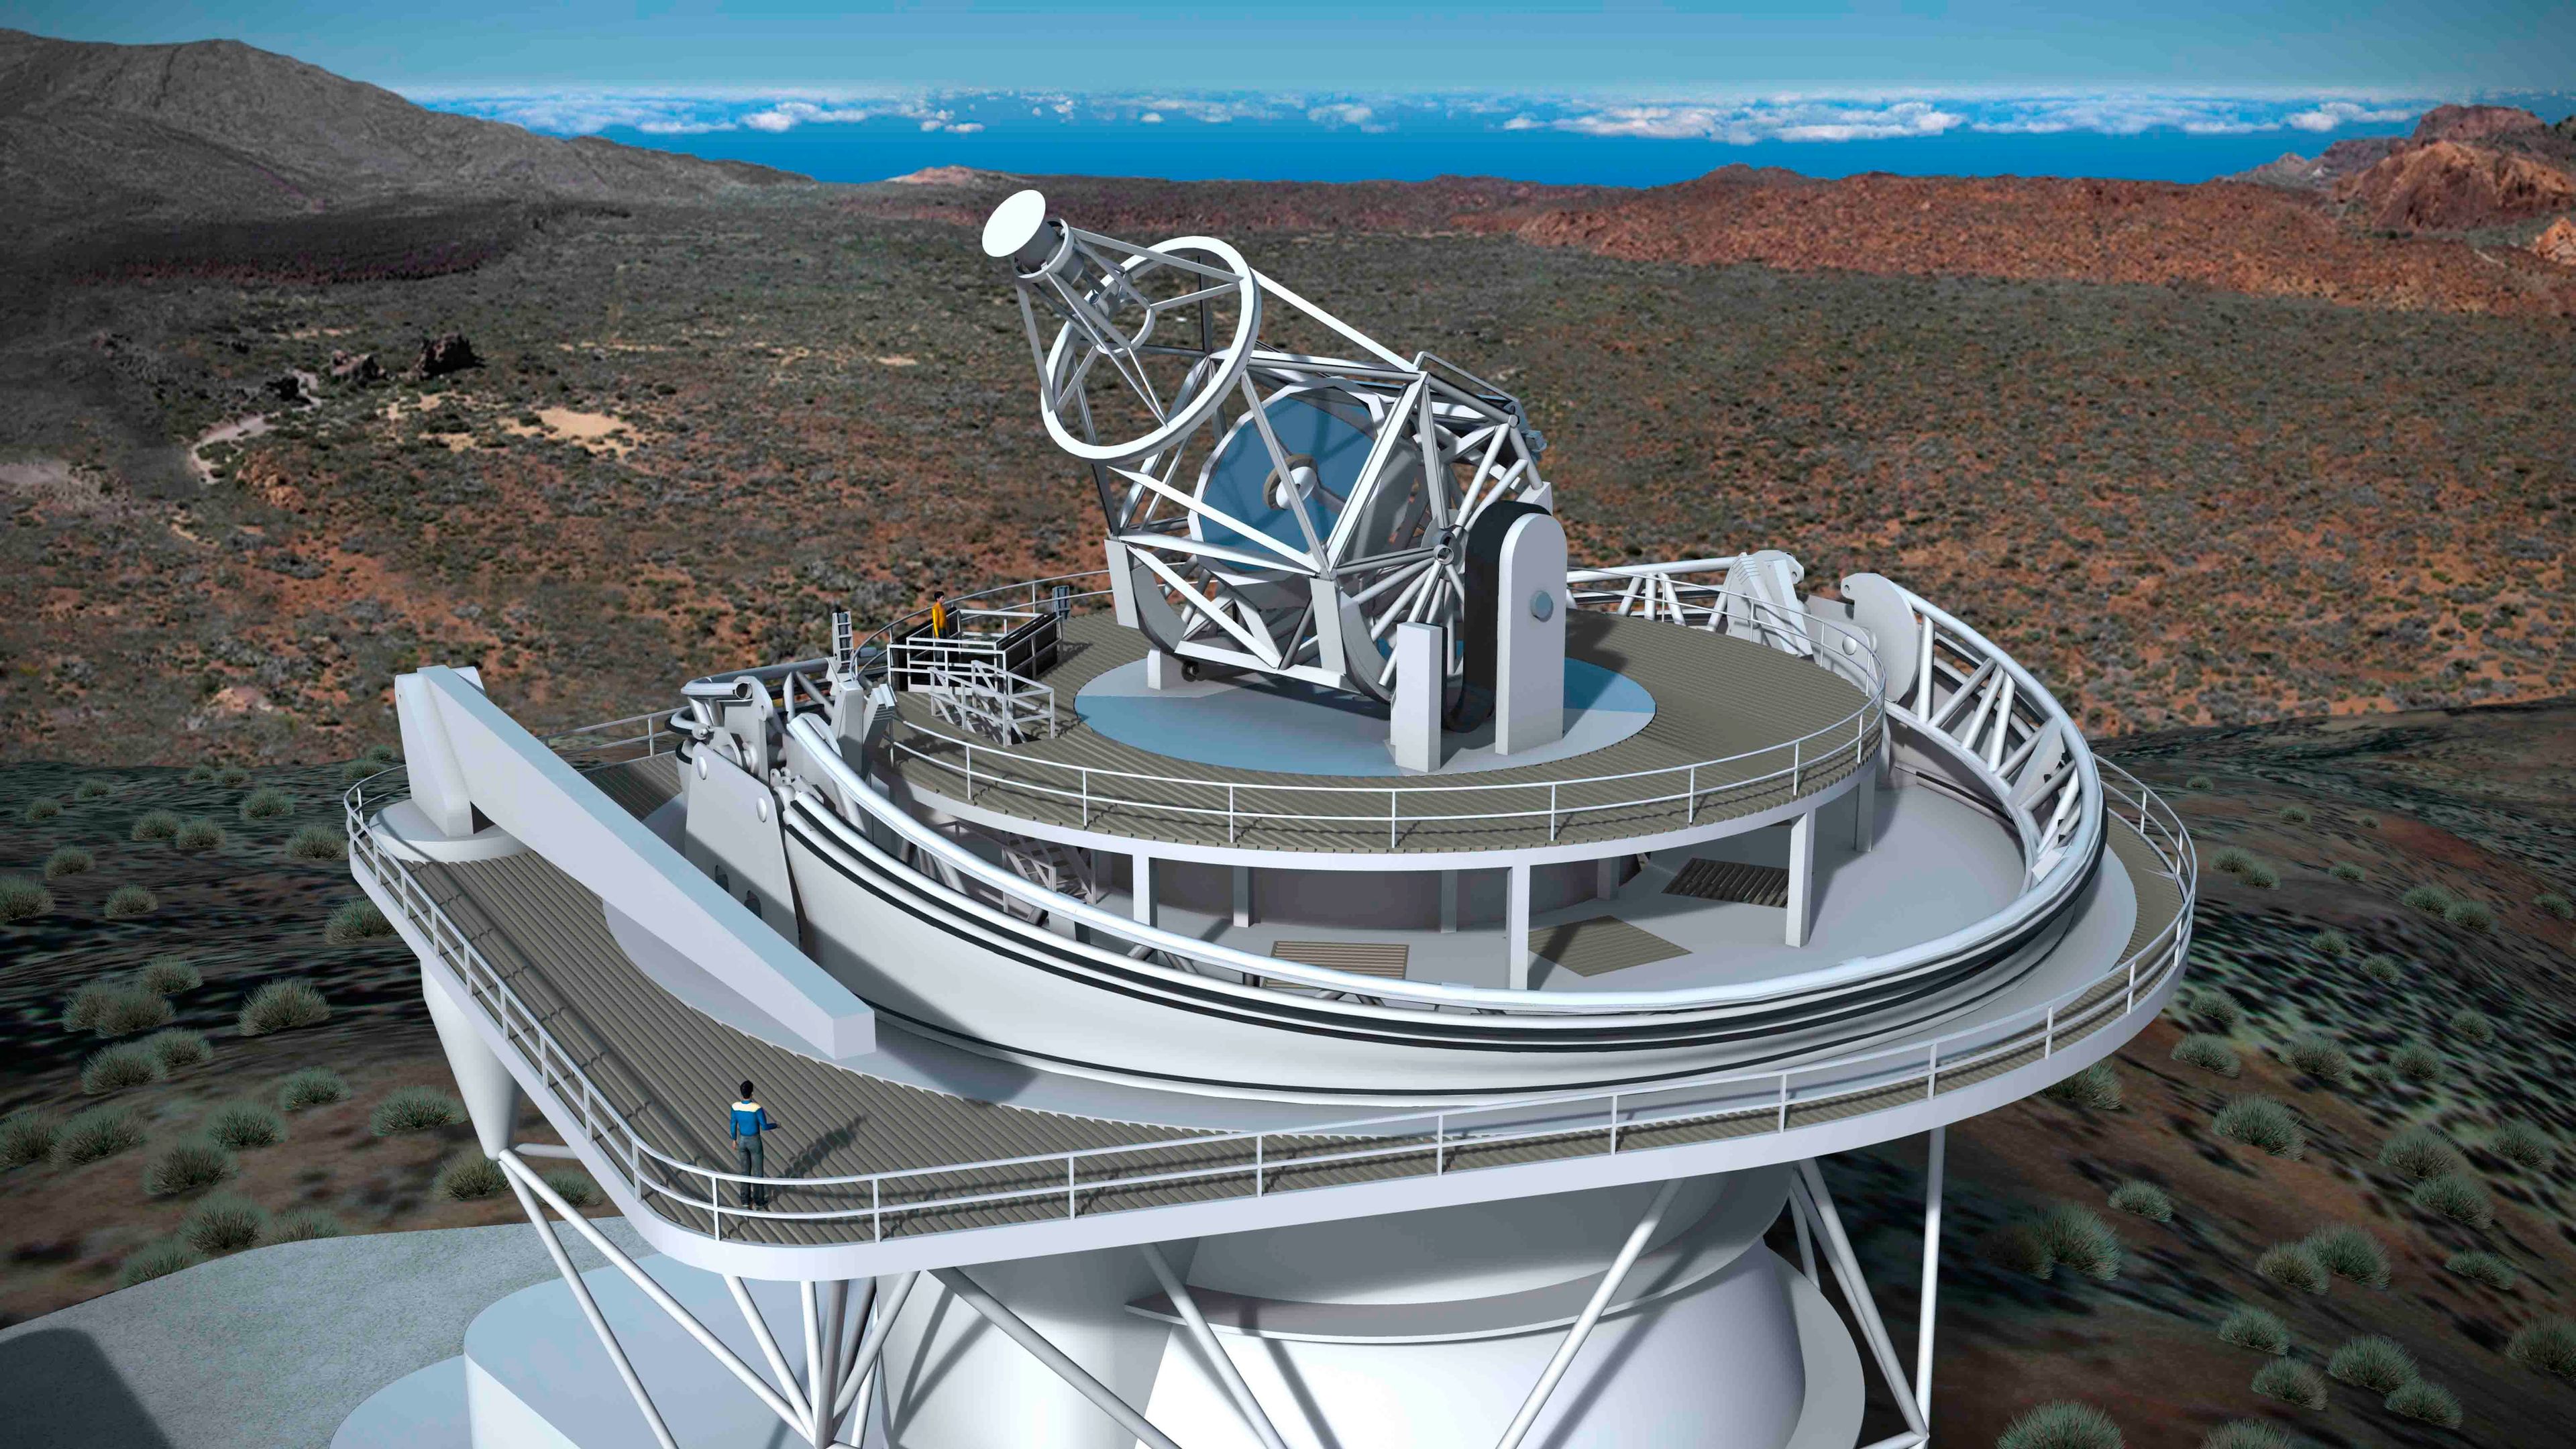 Cómo será el Telescopio Solar Europeo que se construirá en breve